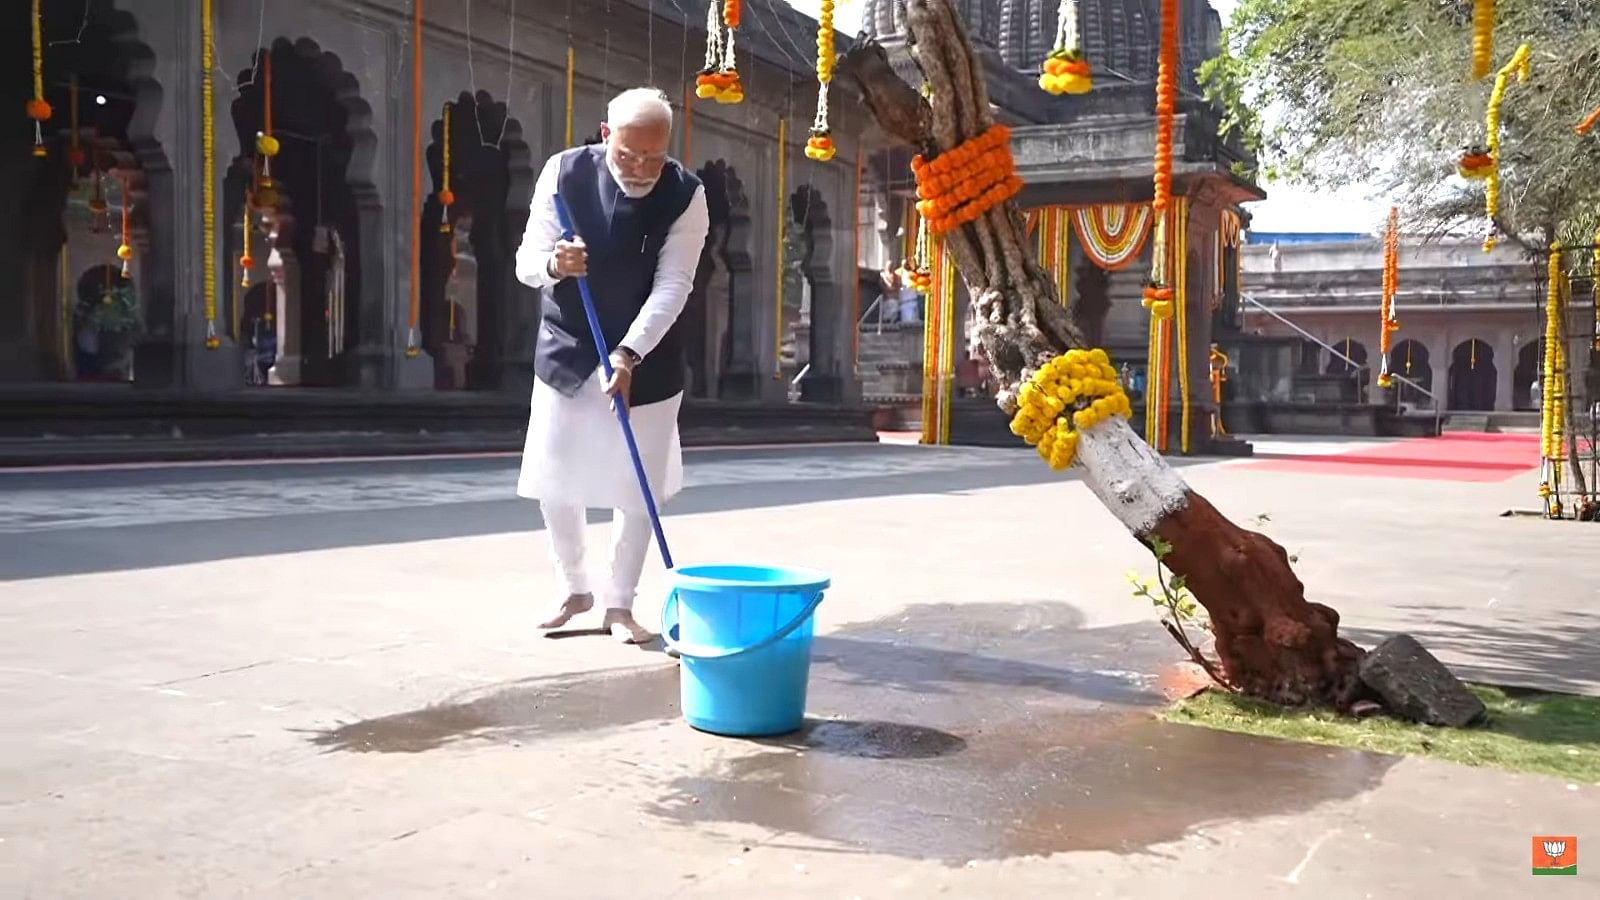 <div class="paragraphs"><p>PM मोदी ने कालाराम मंदिर में की सफाई, जनता से स्वच्छता अभियान चलाने की अपील |Photos</p></div>